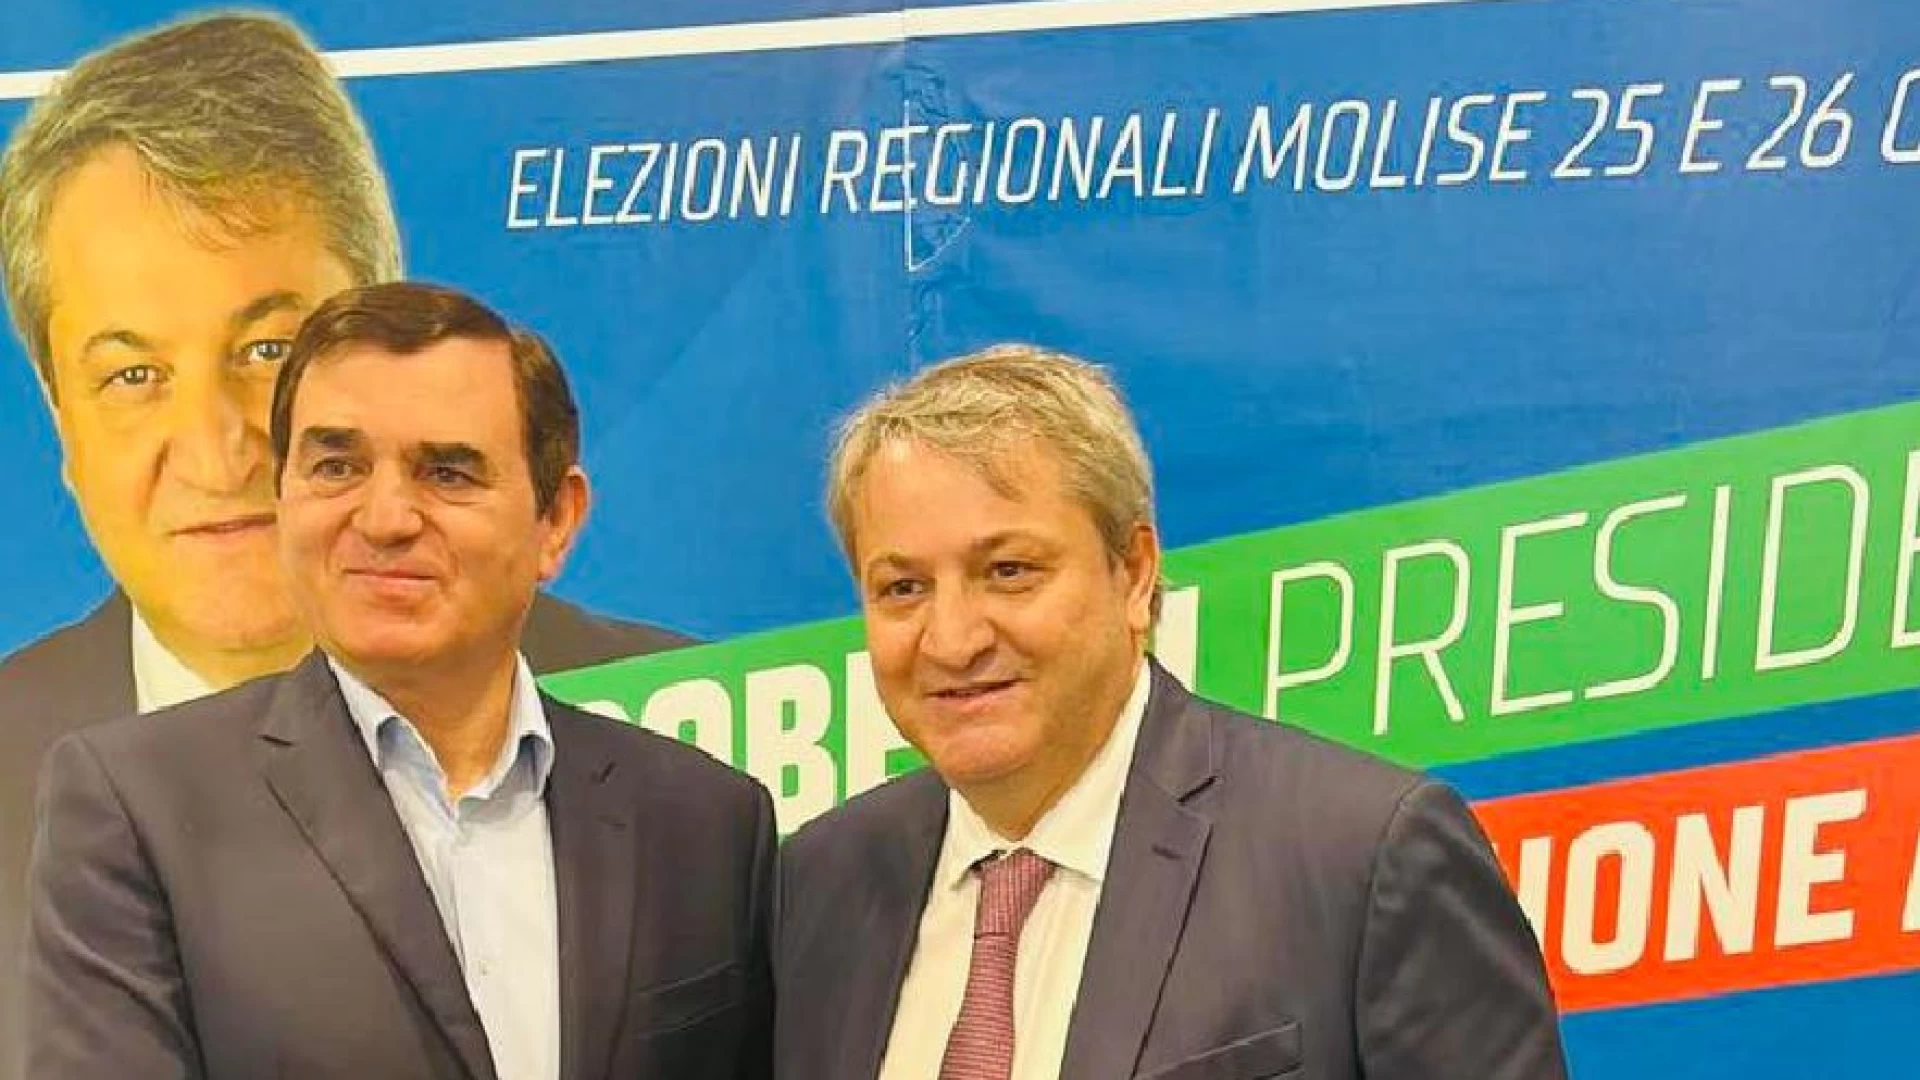 Elezioni regionali del Molise, vince Roberti. Gli auguri di Aldo Patriciello al nuovo presidente.